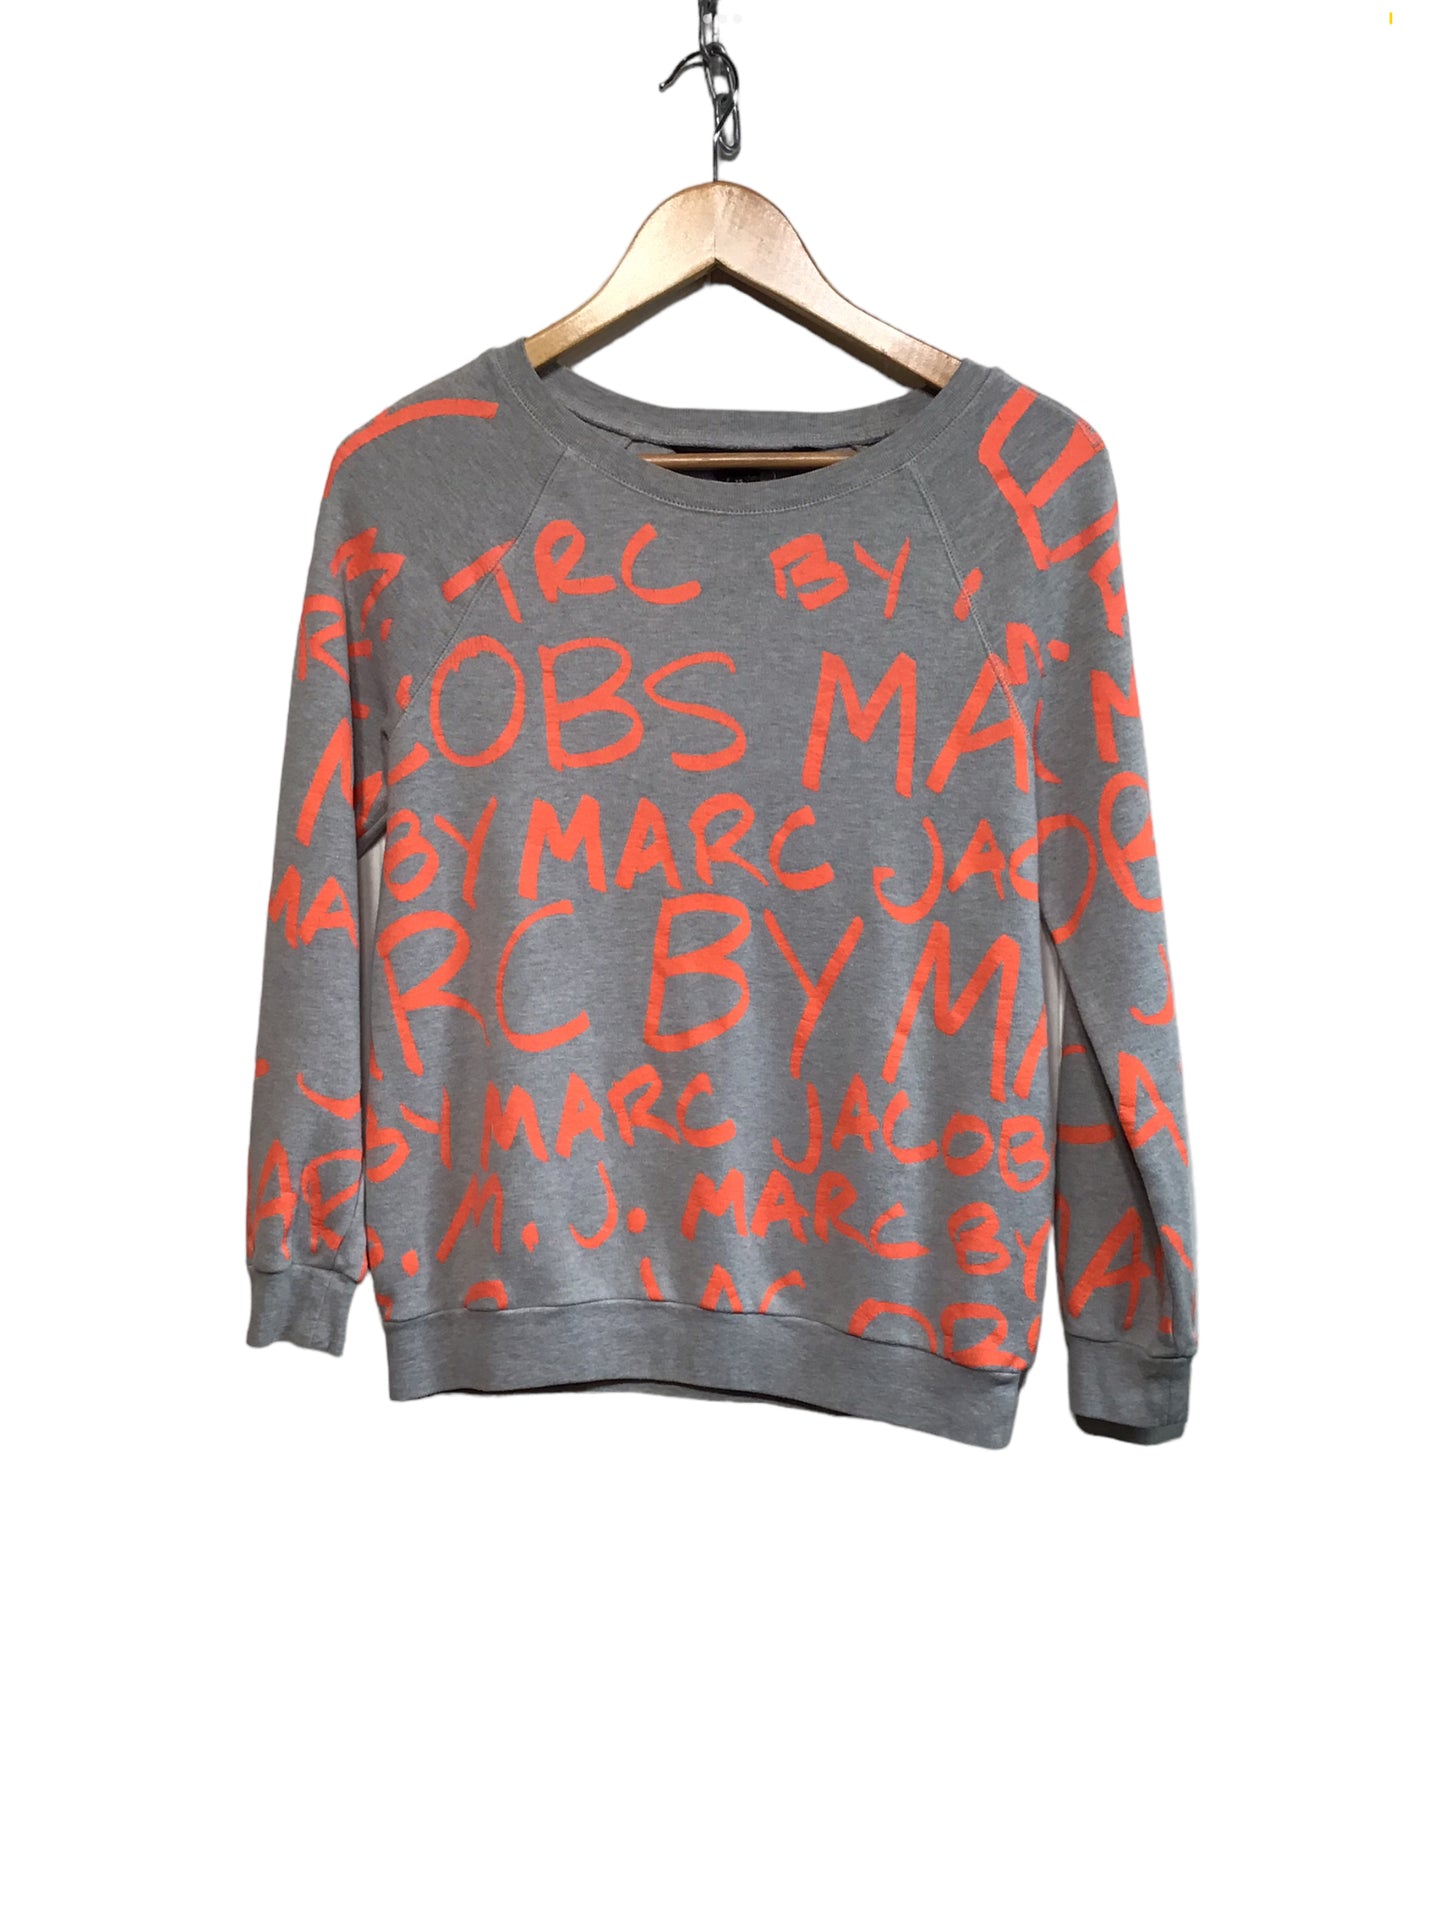 Marc Jacobs Grey Sweatshirt (Size XS)